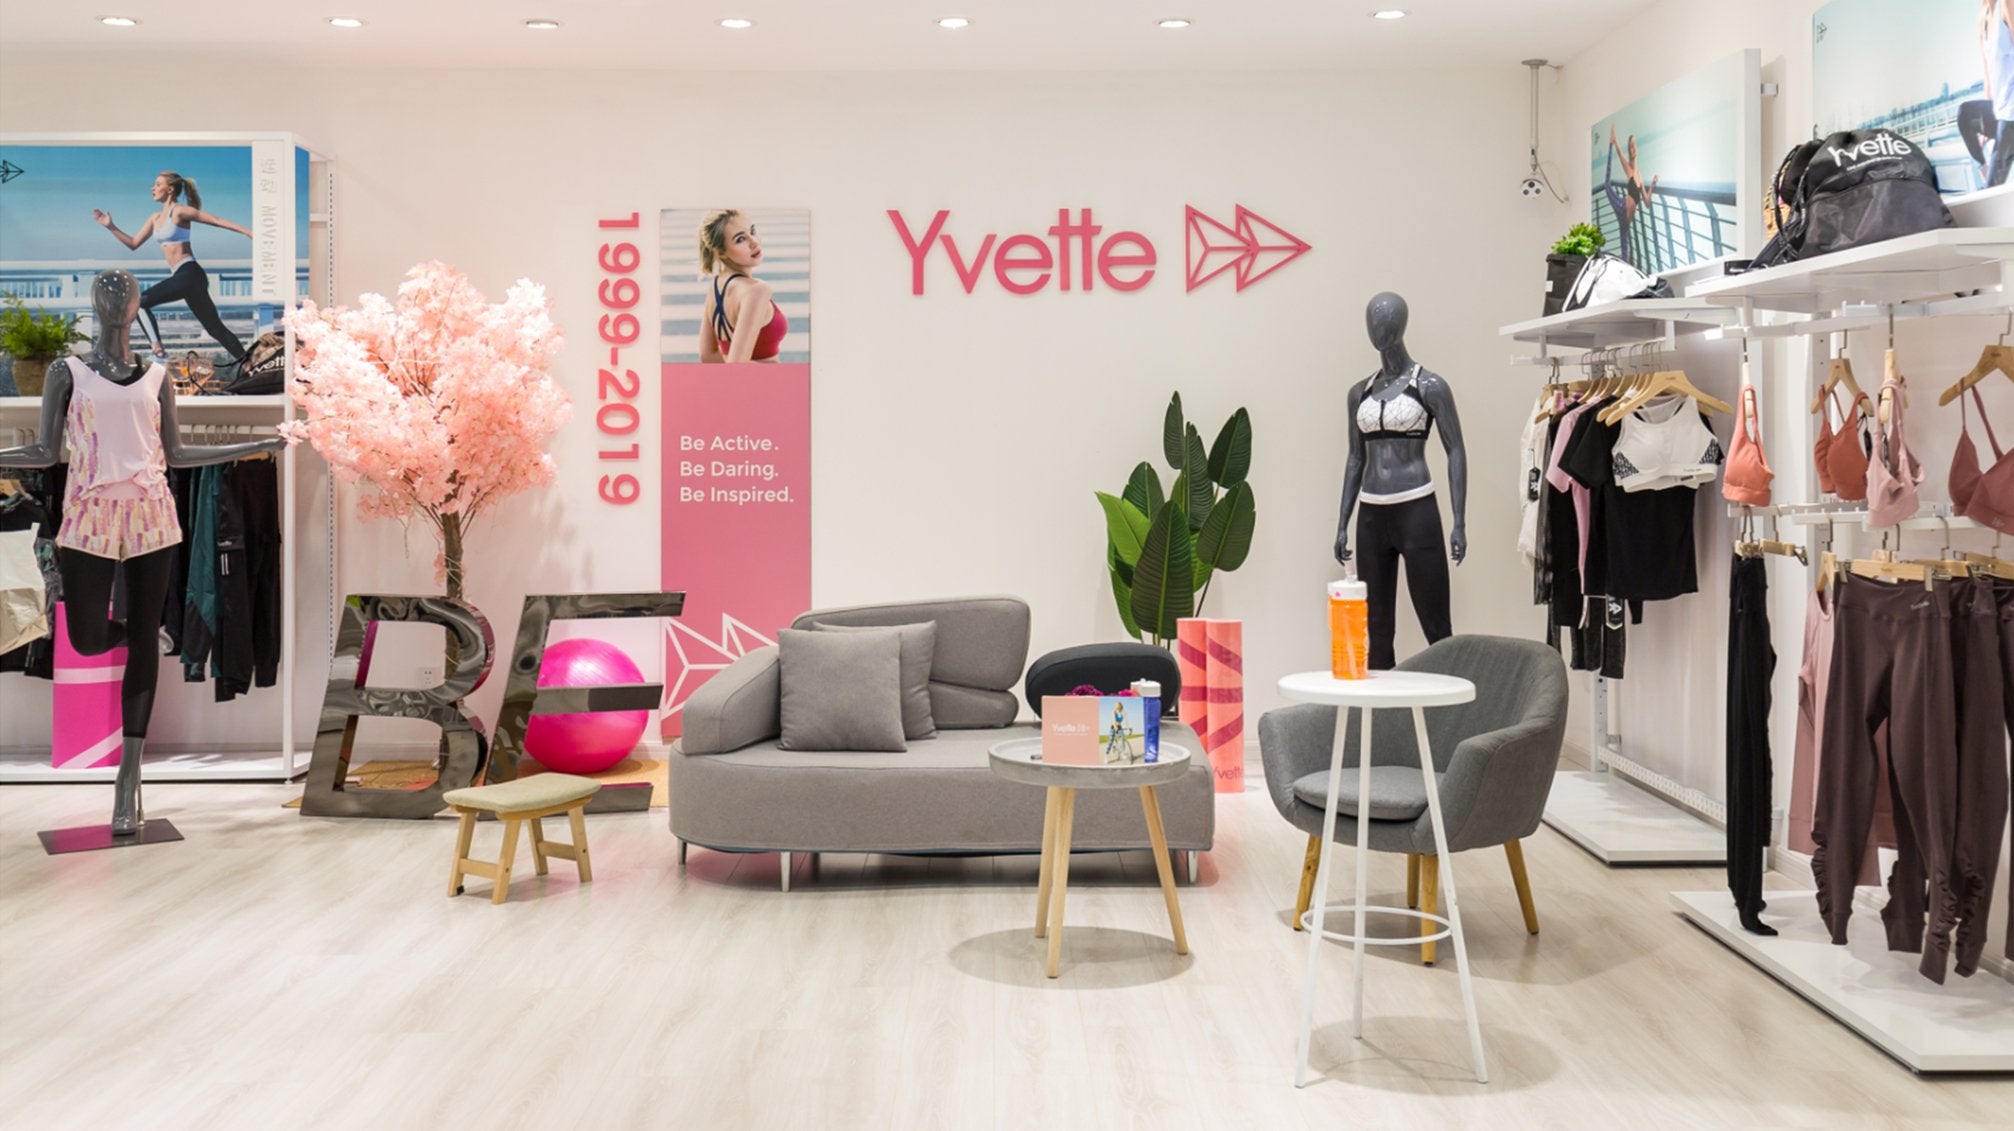 About Yvette -  A Professional Women's Sportswear Brand